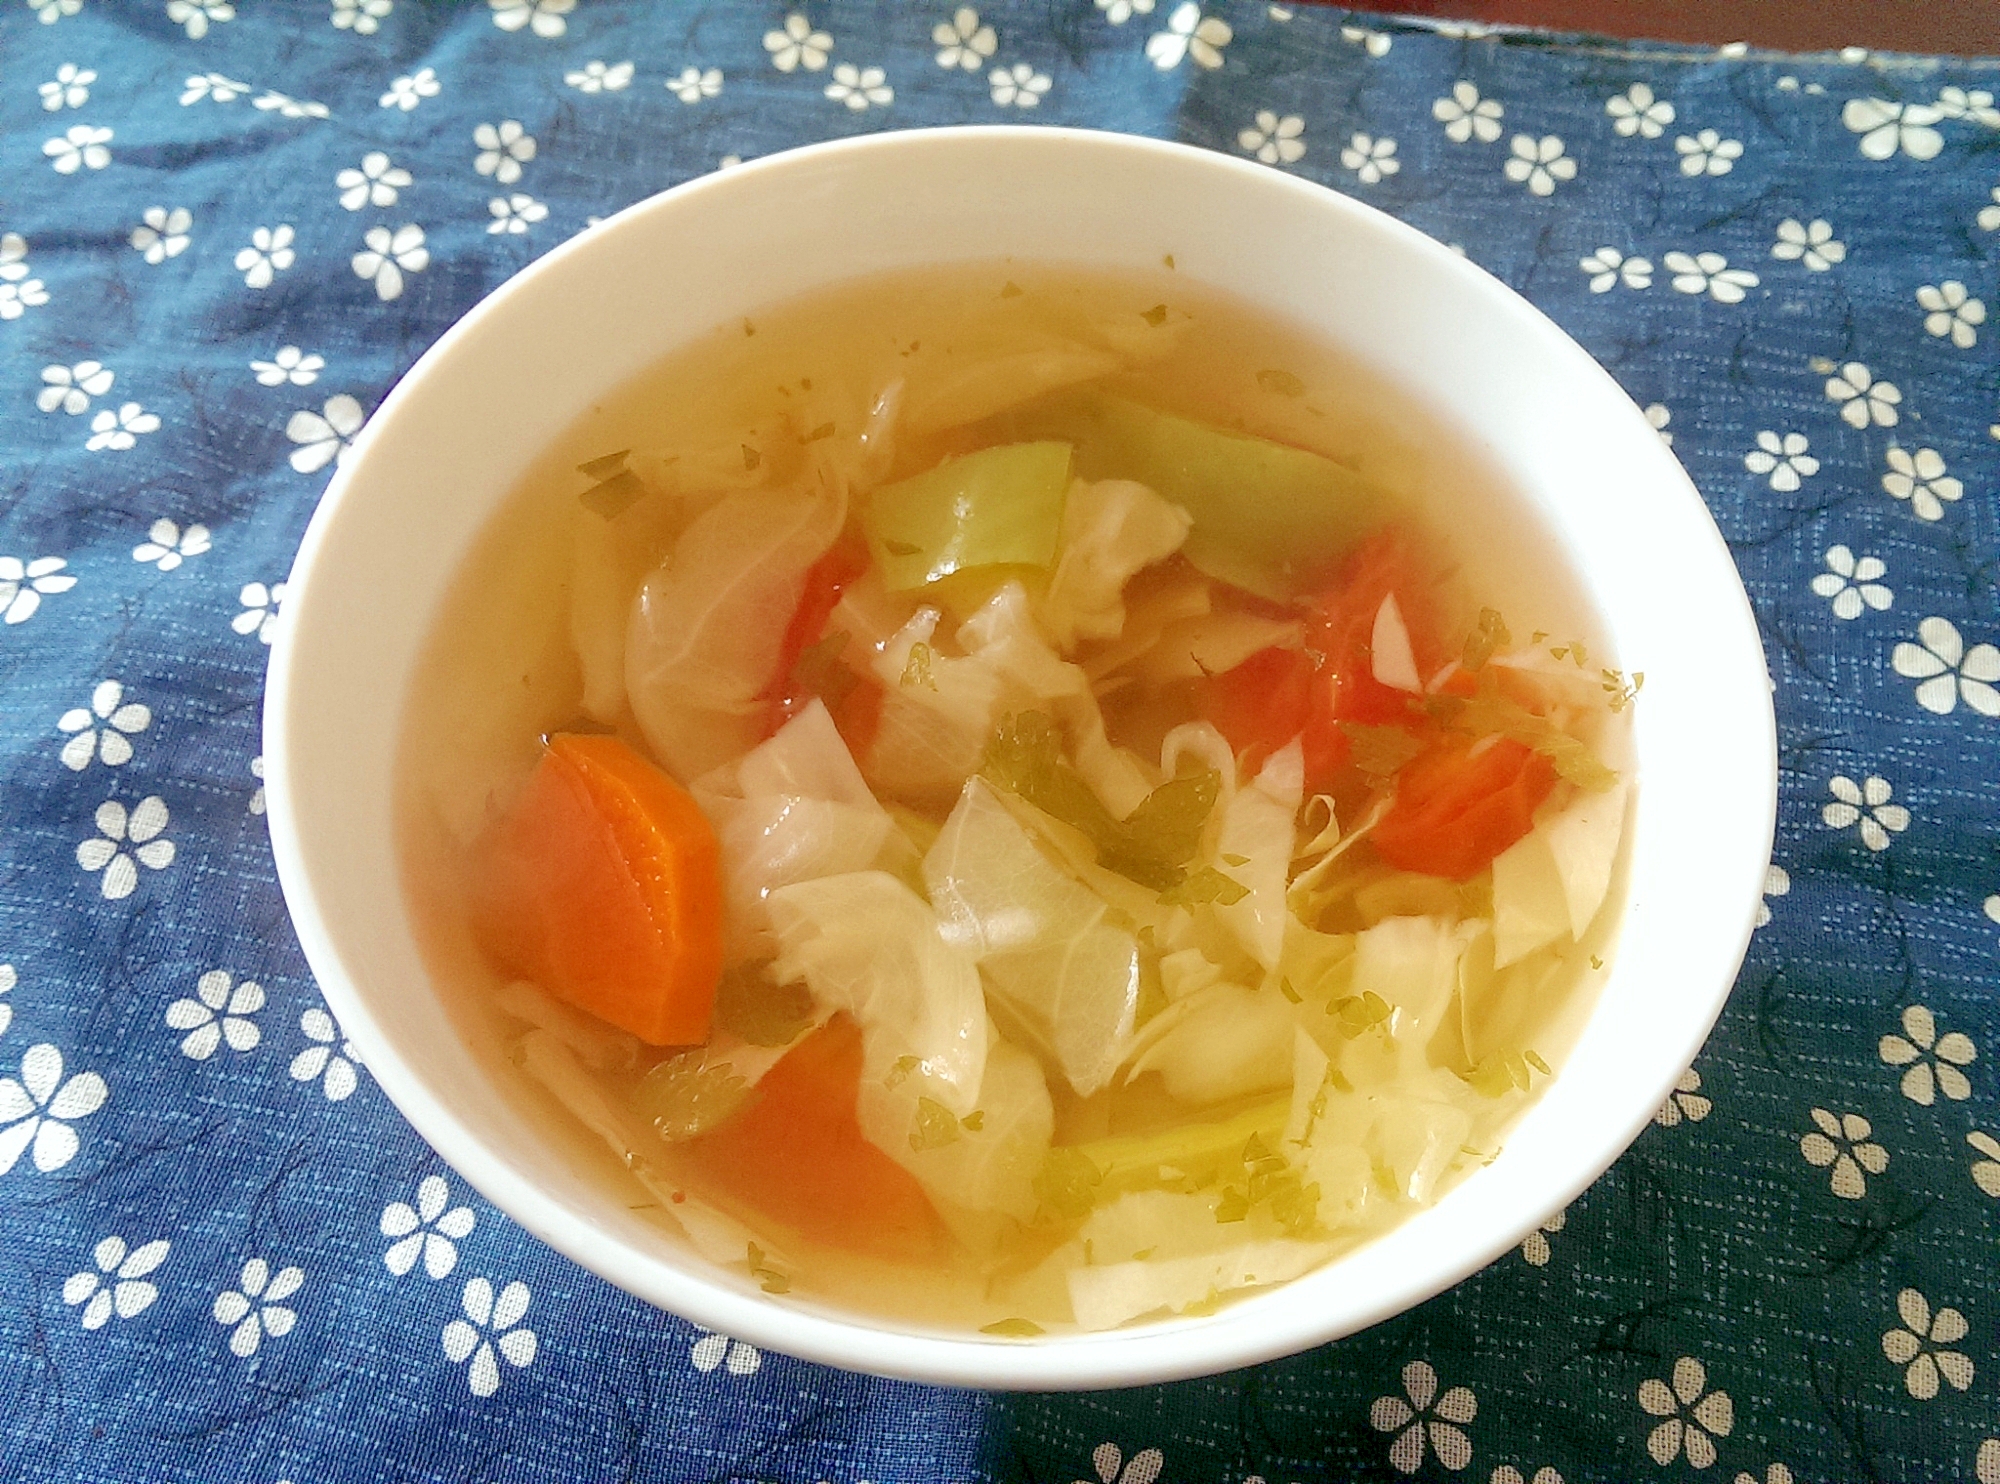 六種の野菜のスープ